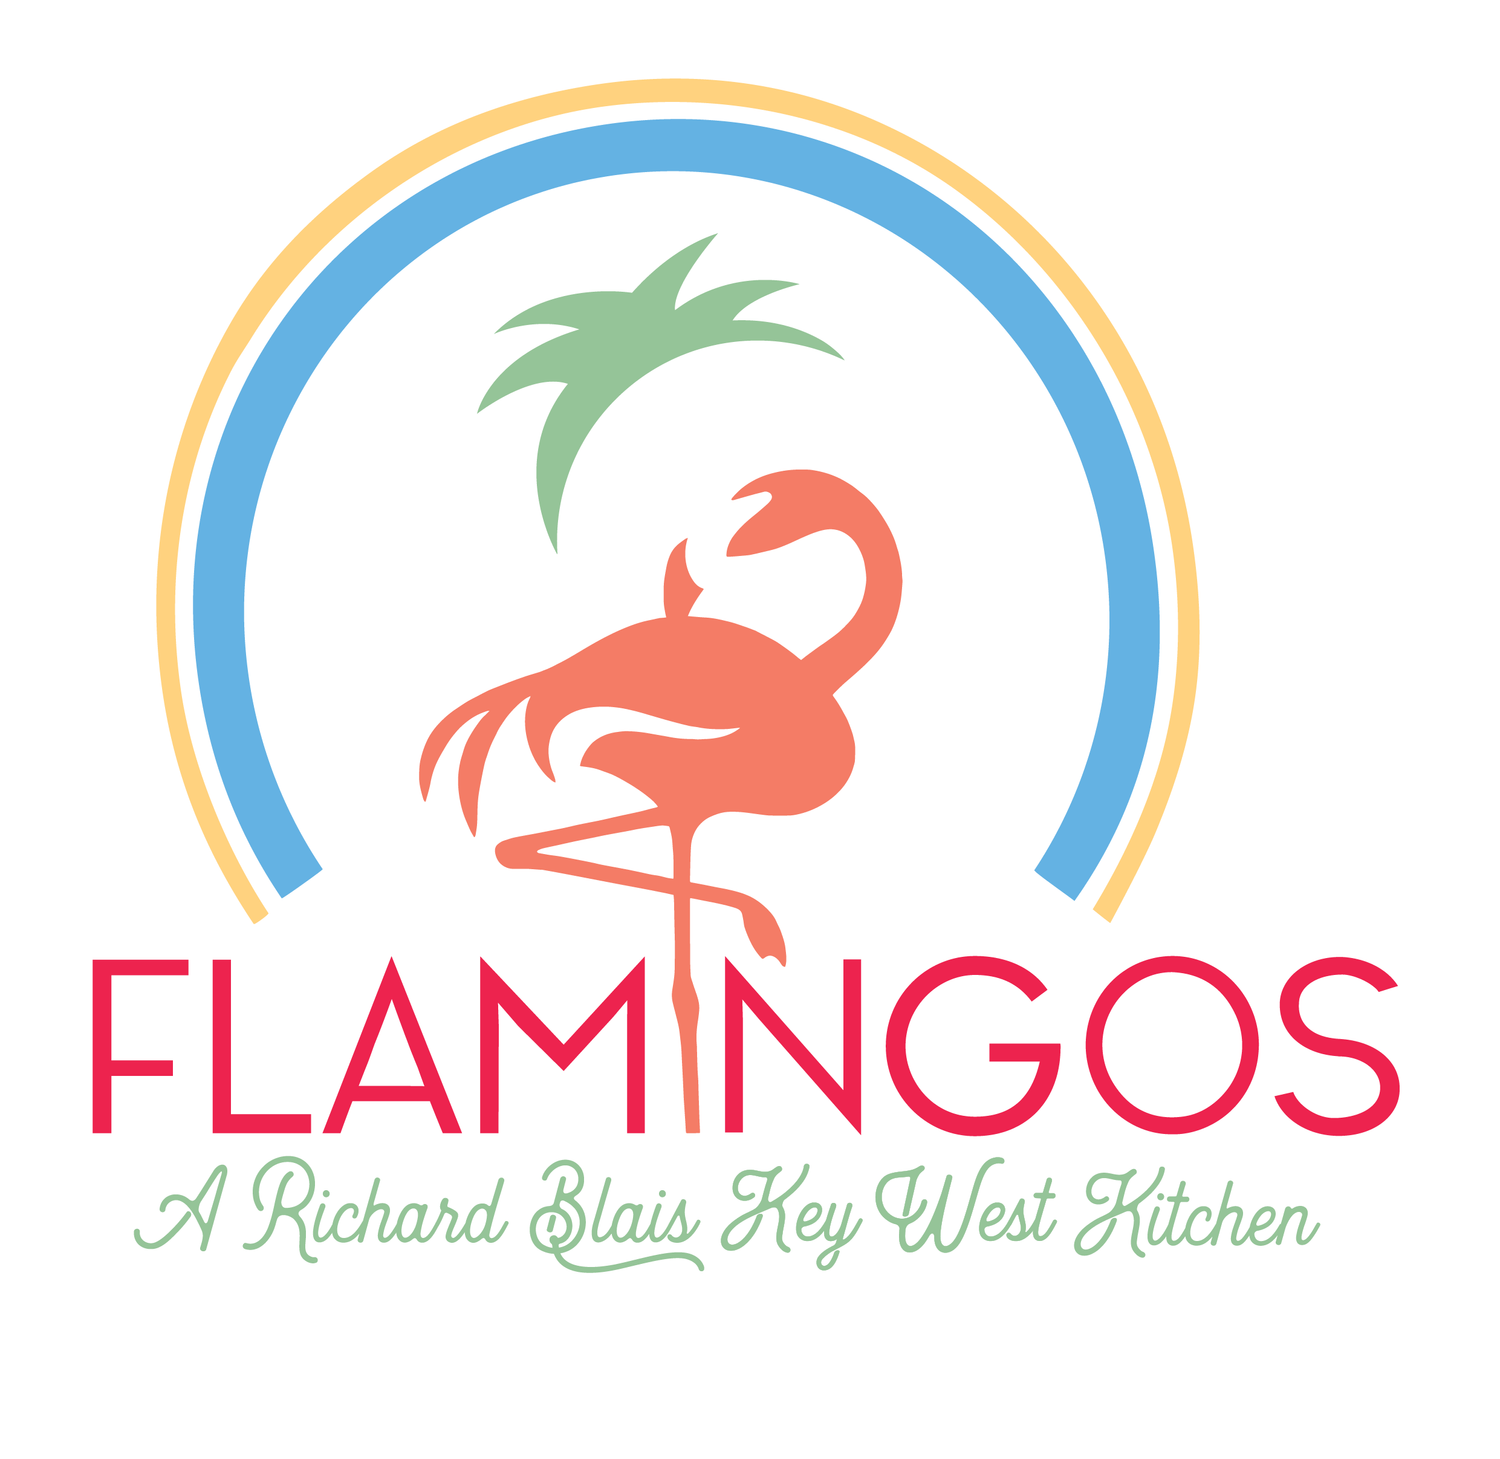 Four Flamingos, A Richard Blais Key West Kitchen